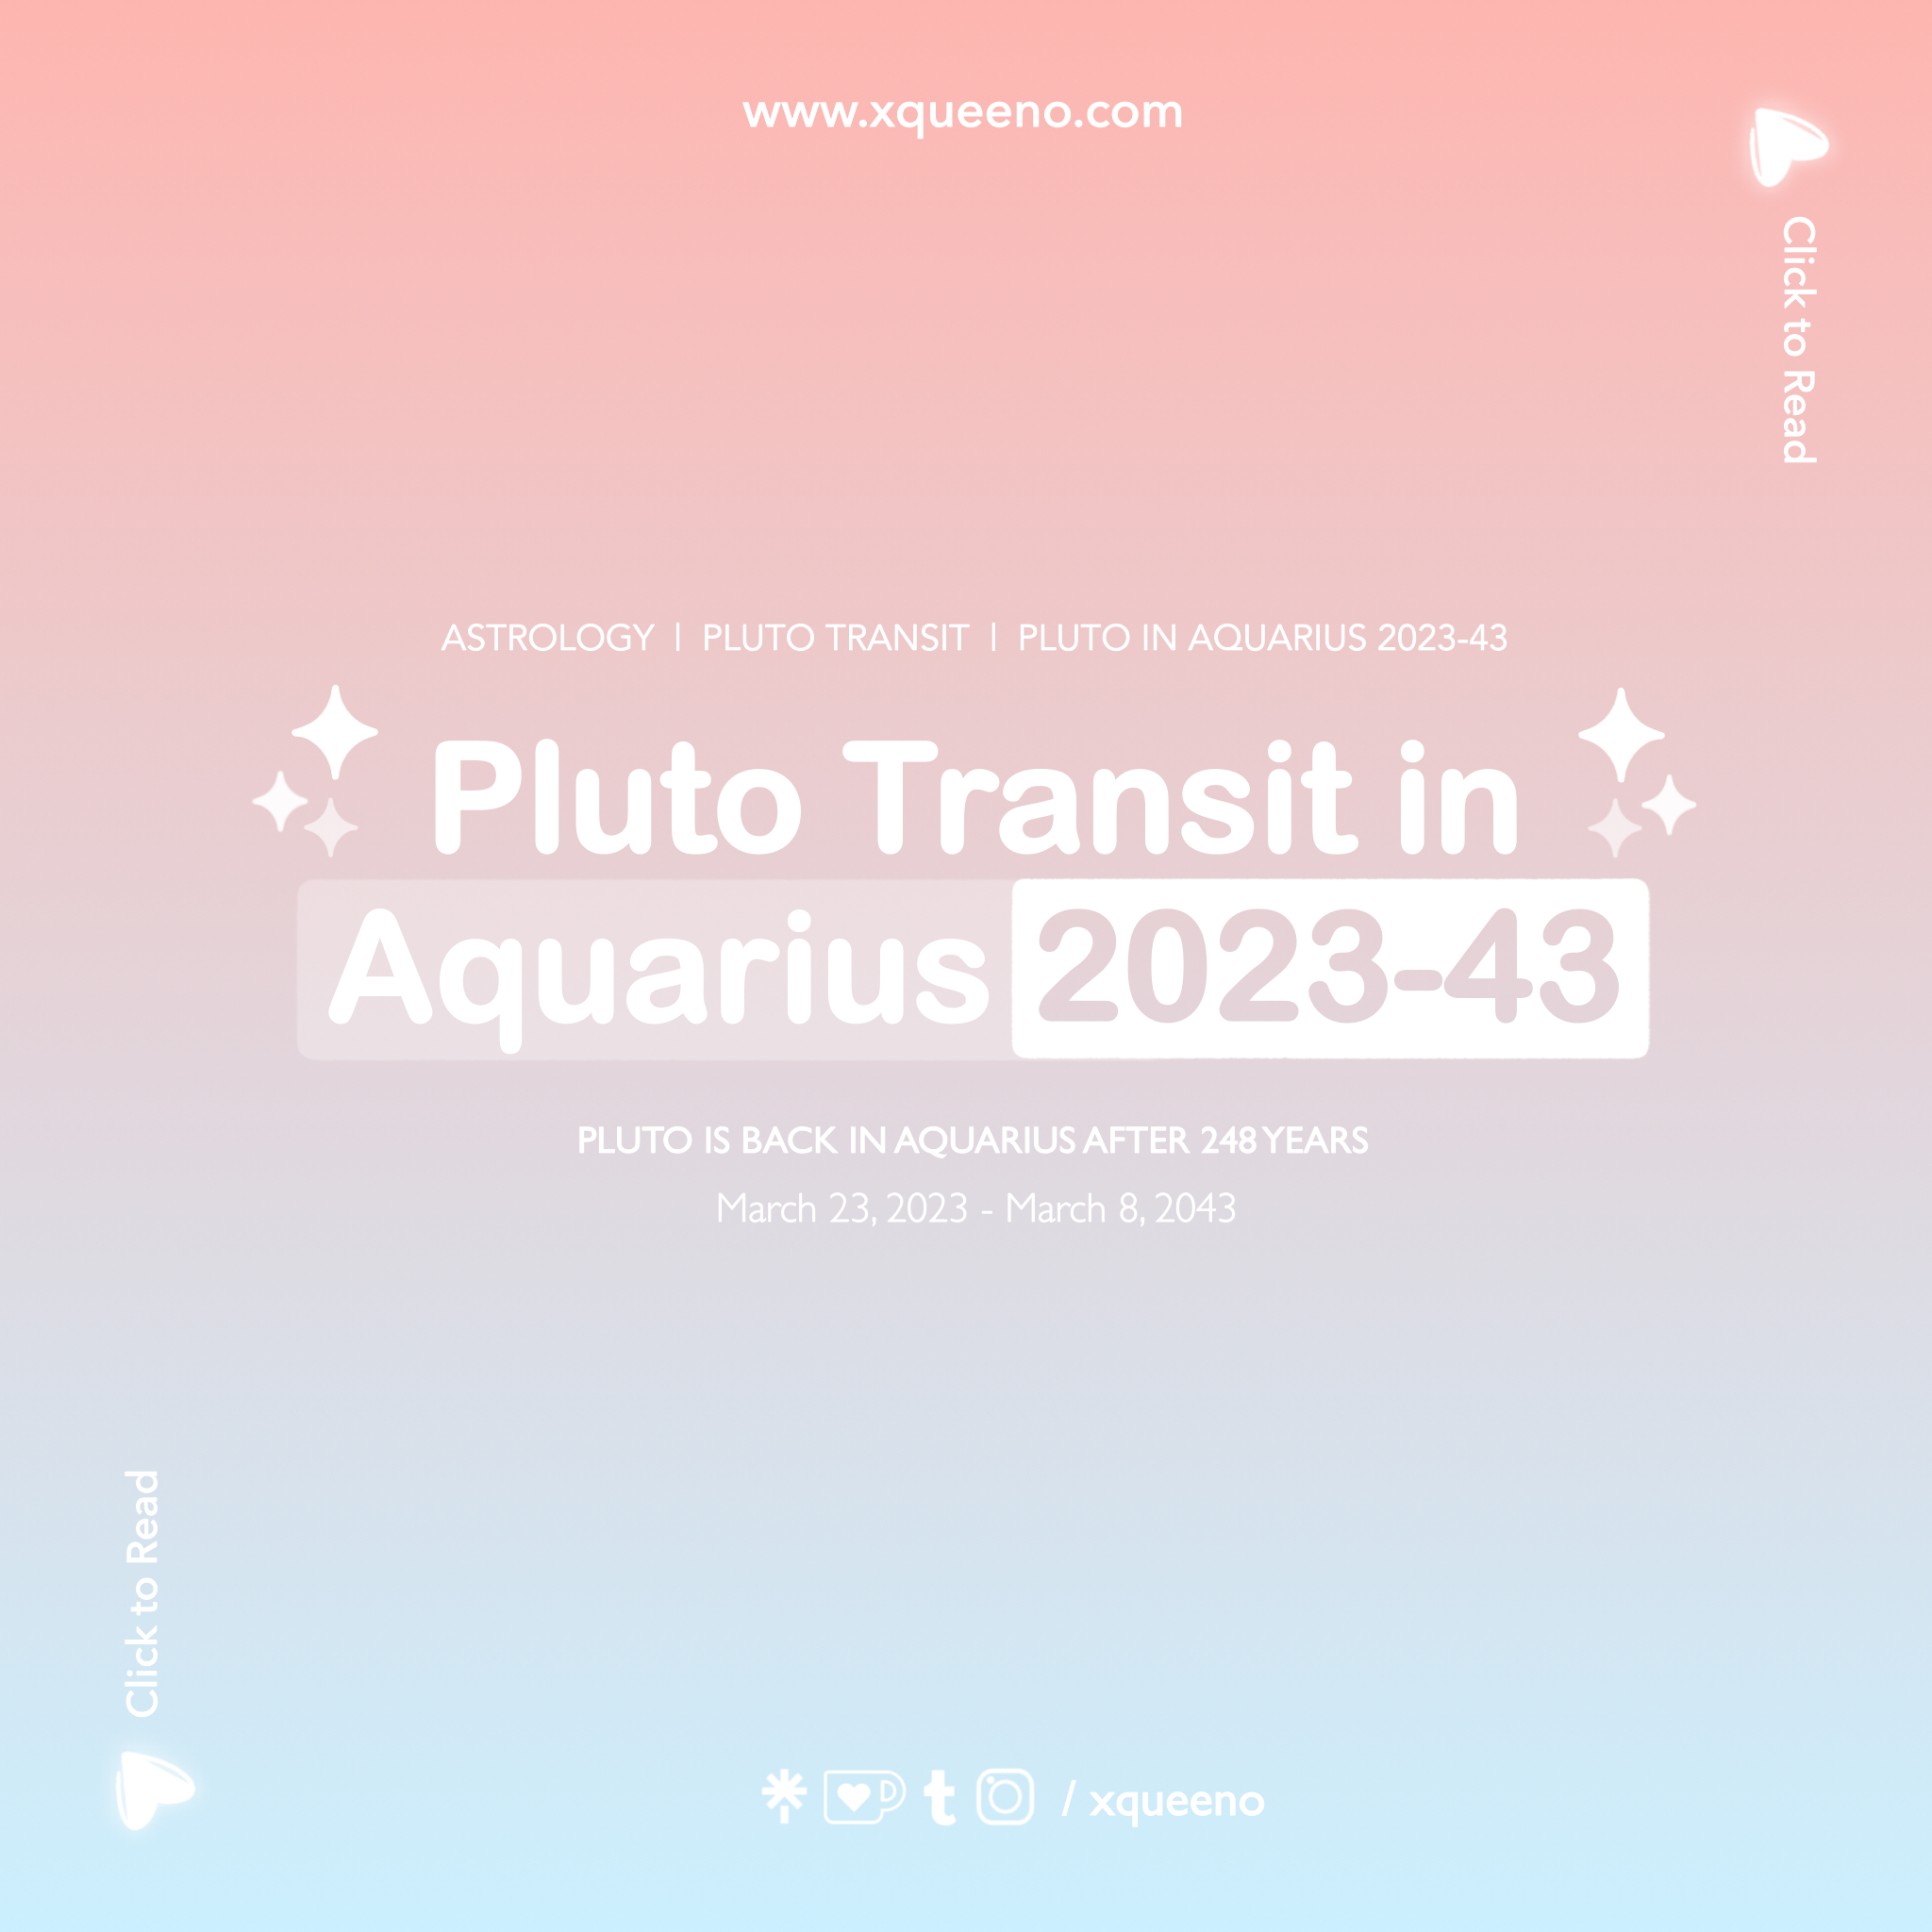 Pluto Transit in Aquarius 2023-43, Pluto is back in Aquarius after 248 years